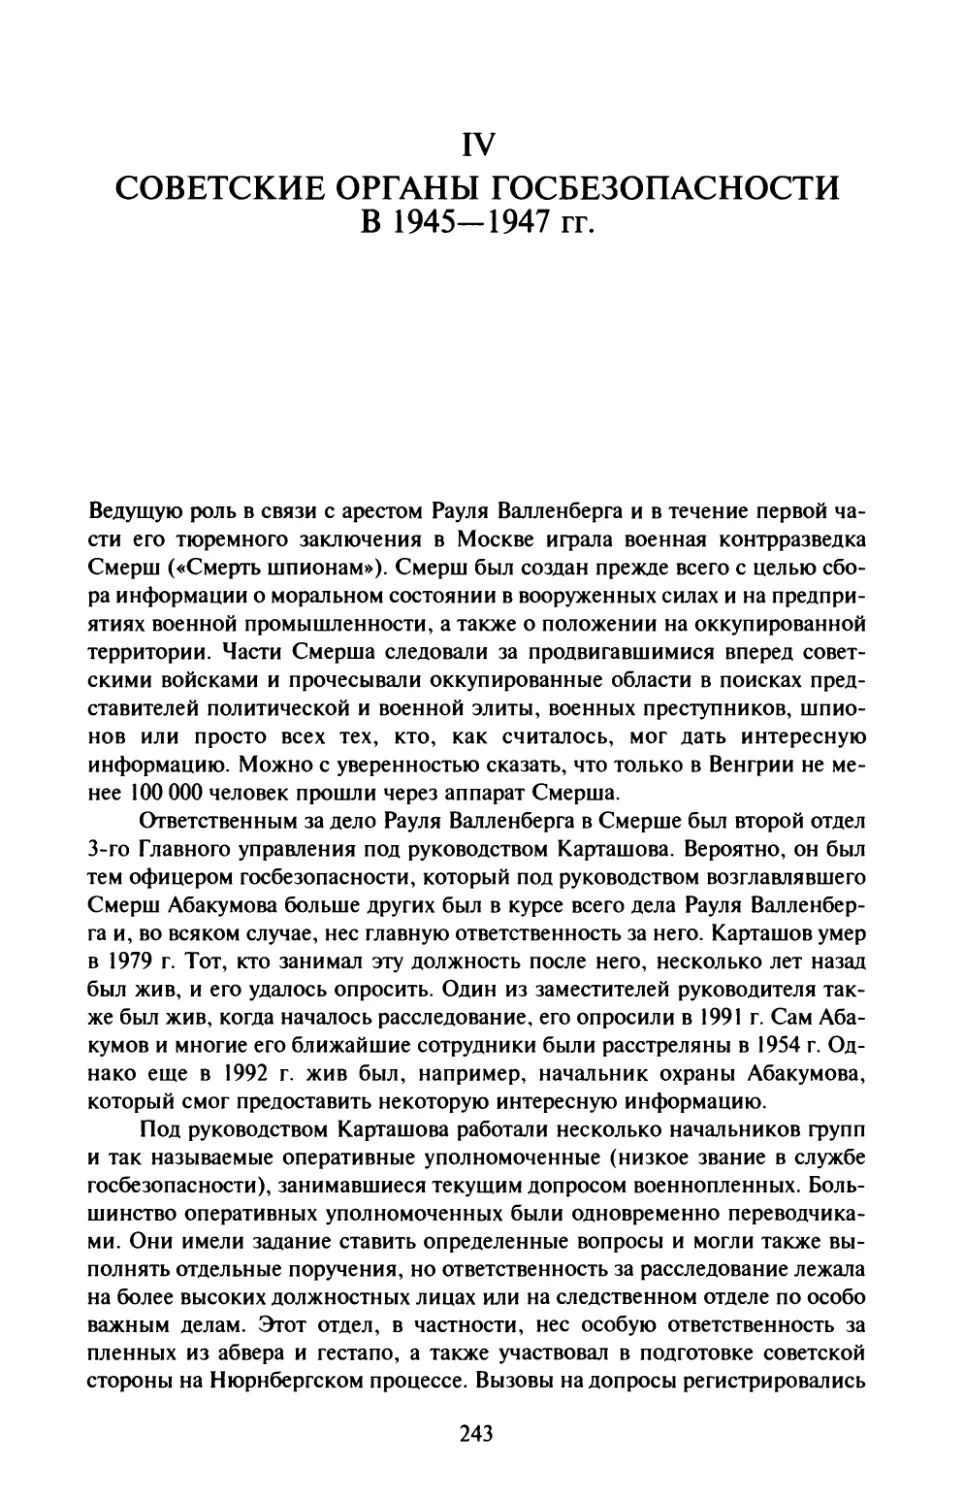 IV. Советские органы госбезопасности в 1945—1947 гг